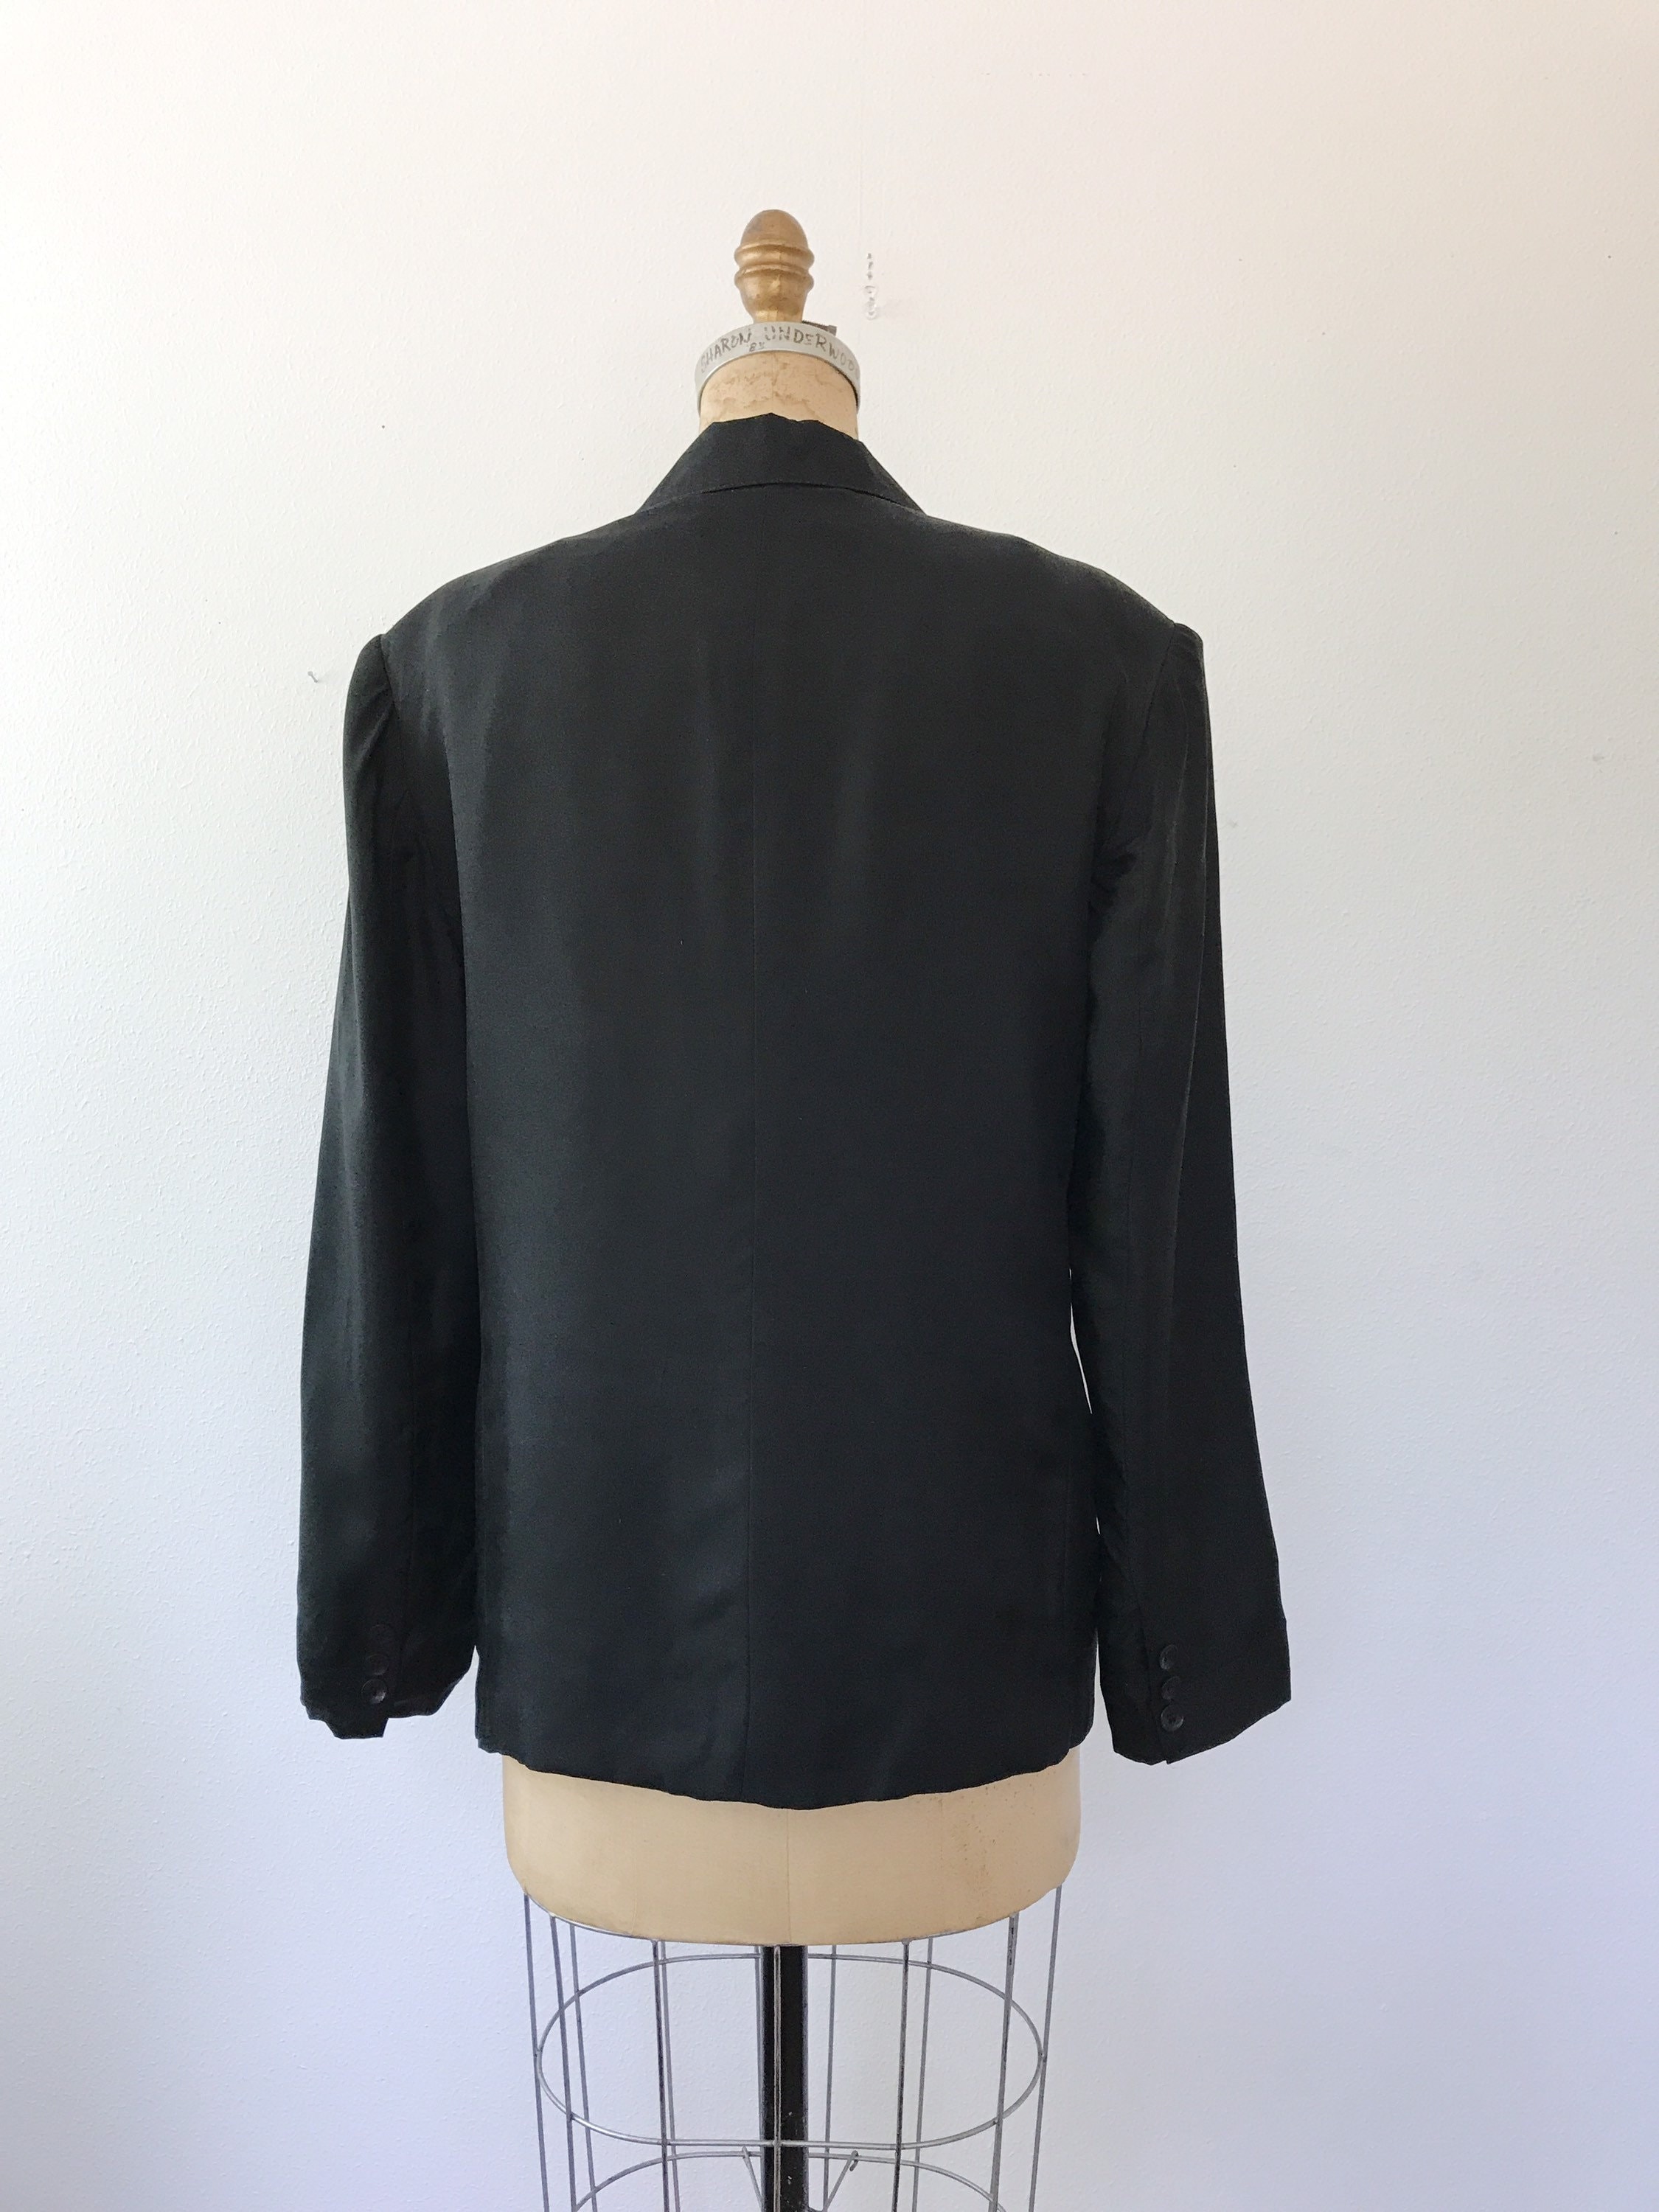 vintage silk Blazer / black blazer / Forenza Silk jacket